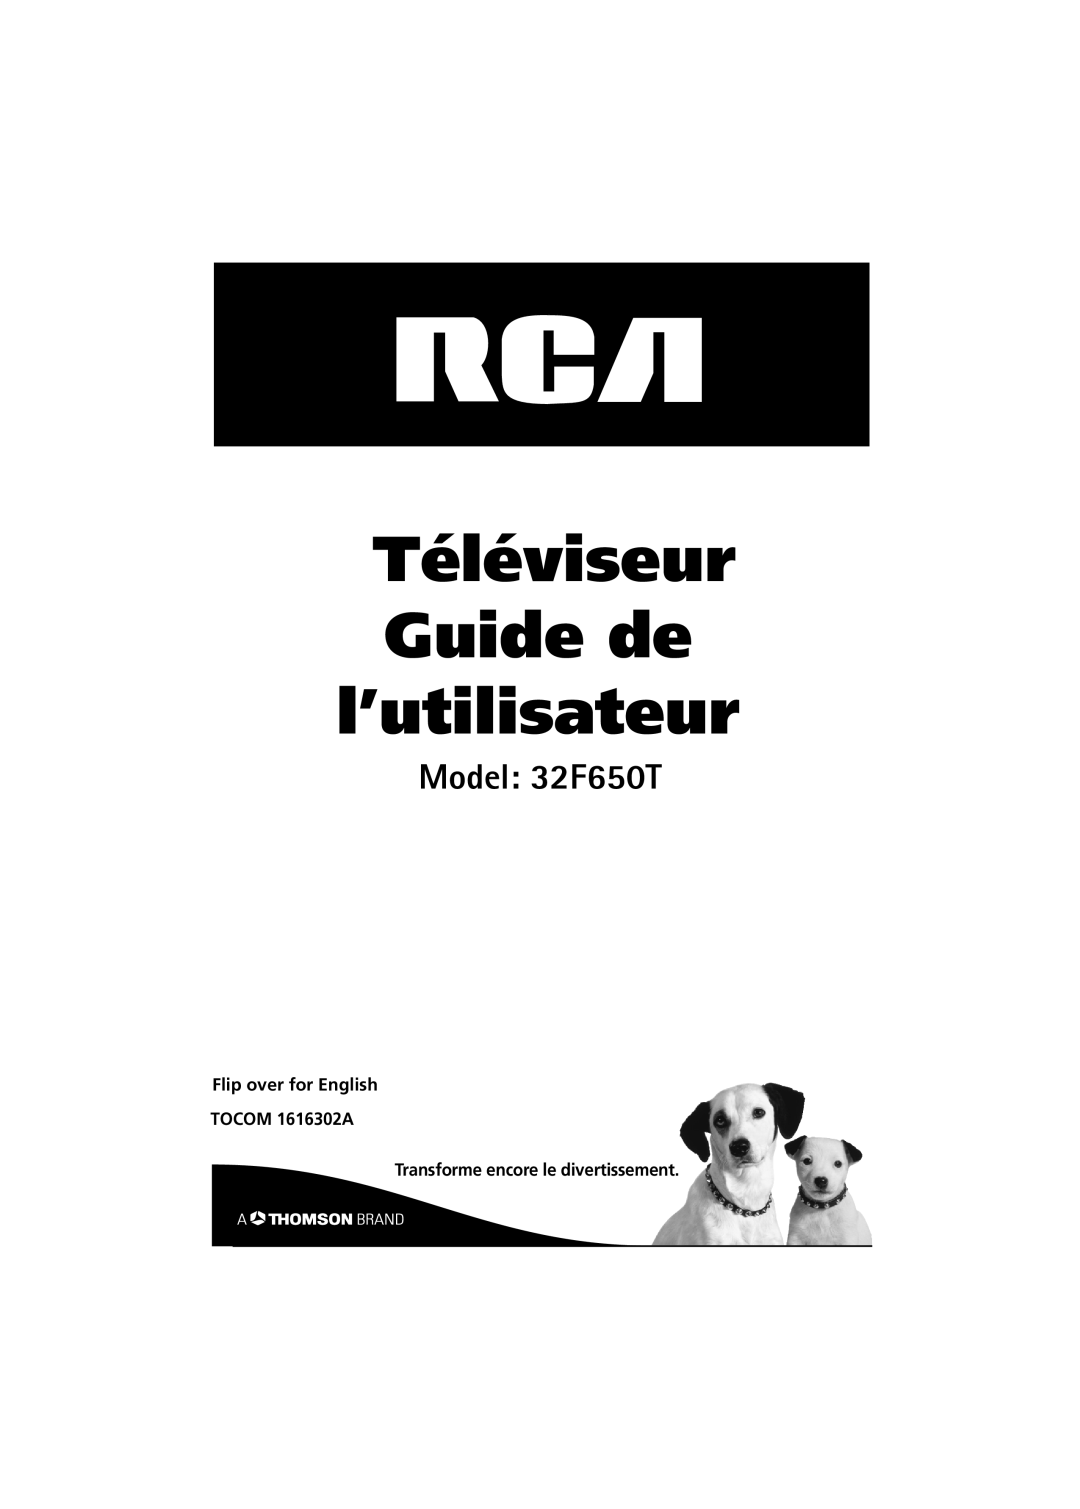 RCA 32F650T Téléviseur Guide de l’utilisateur, Flip over for English TOCOM 1616302A, Transforme encore le divertissement 